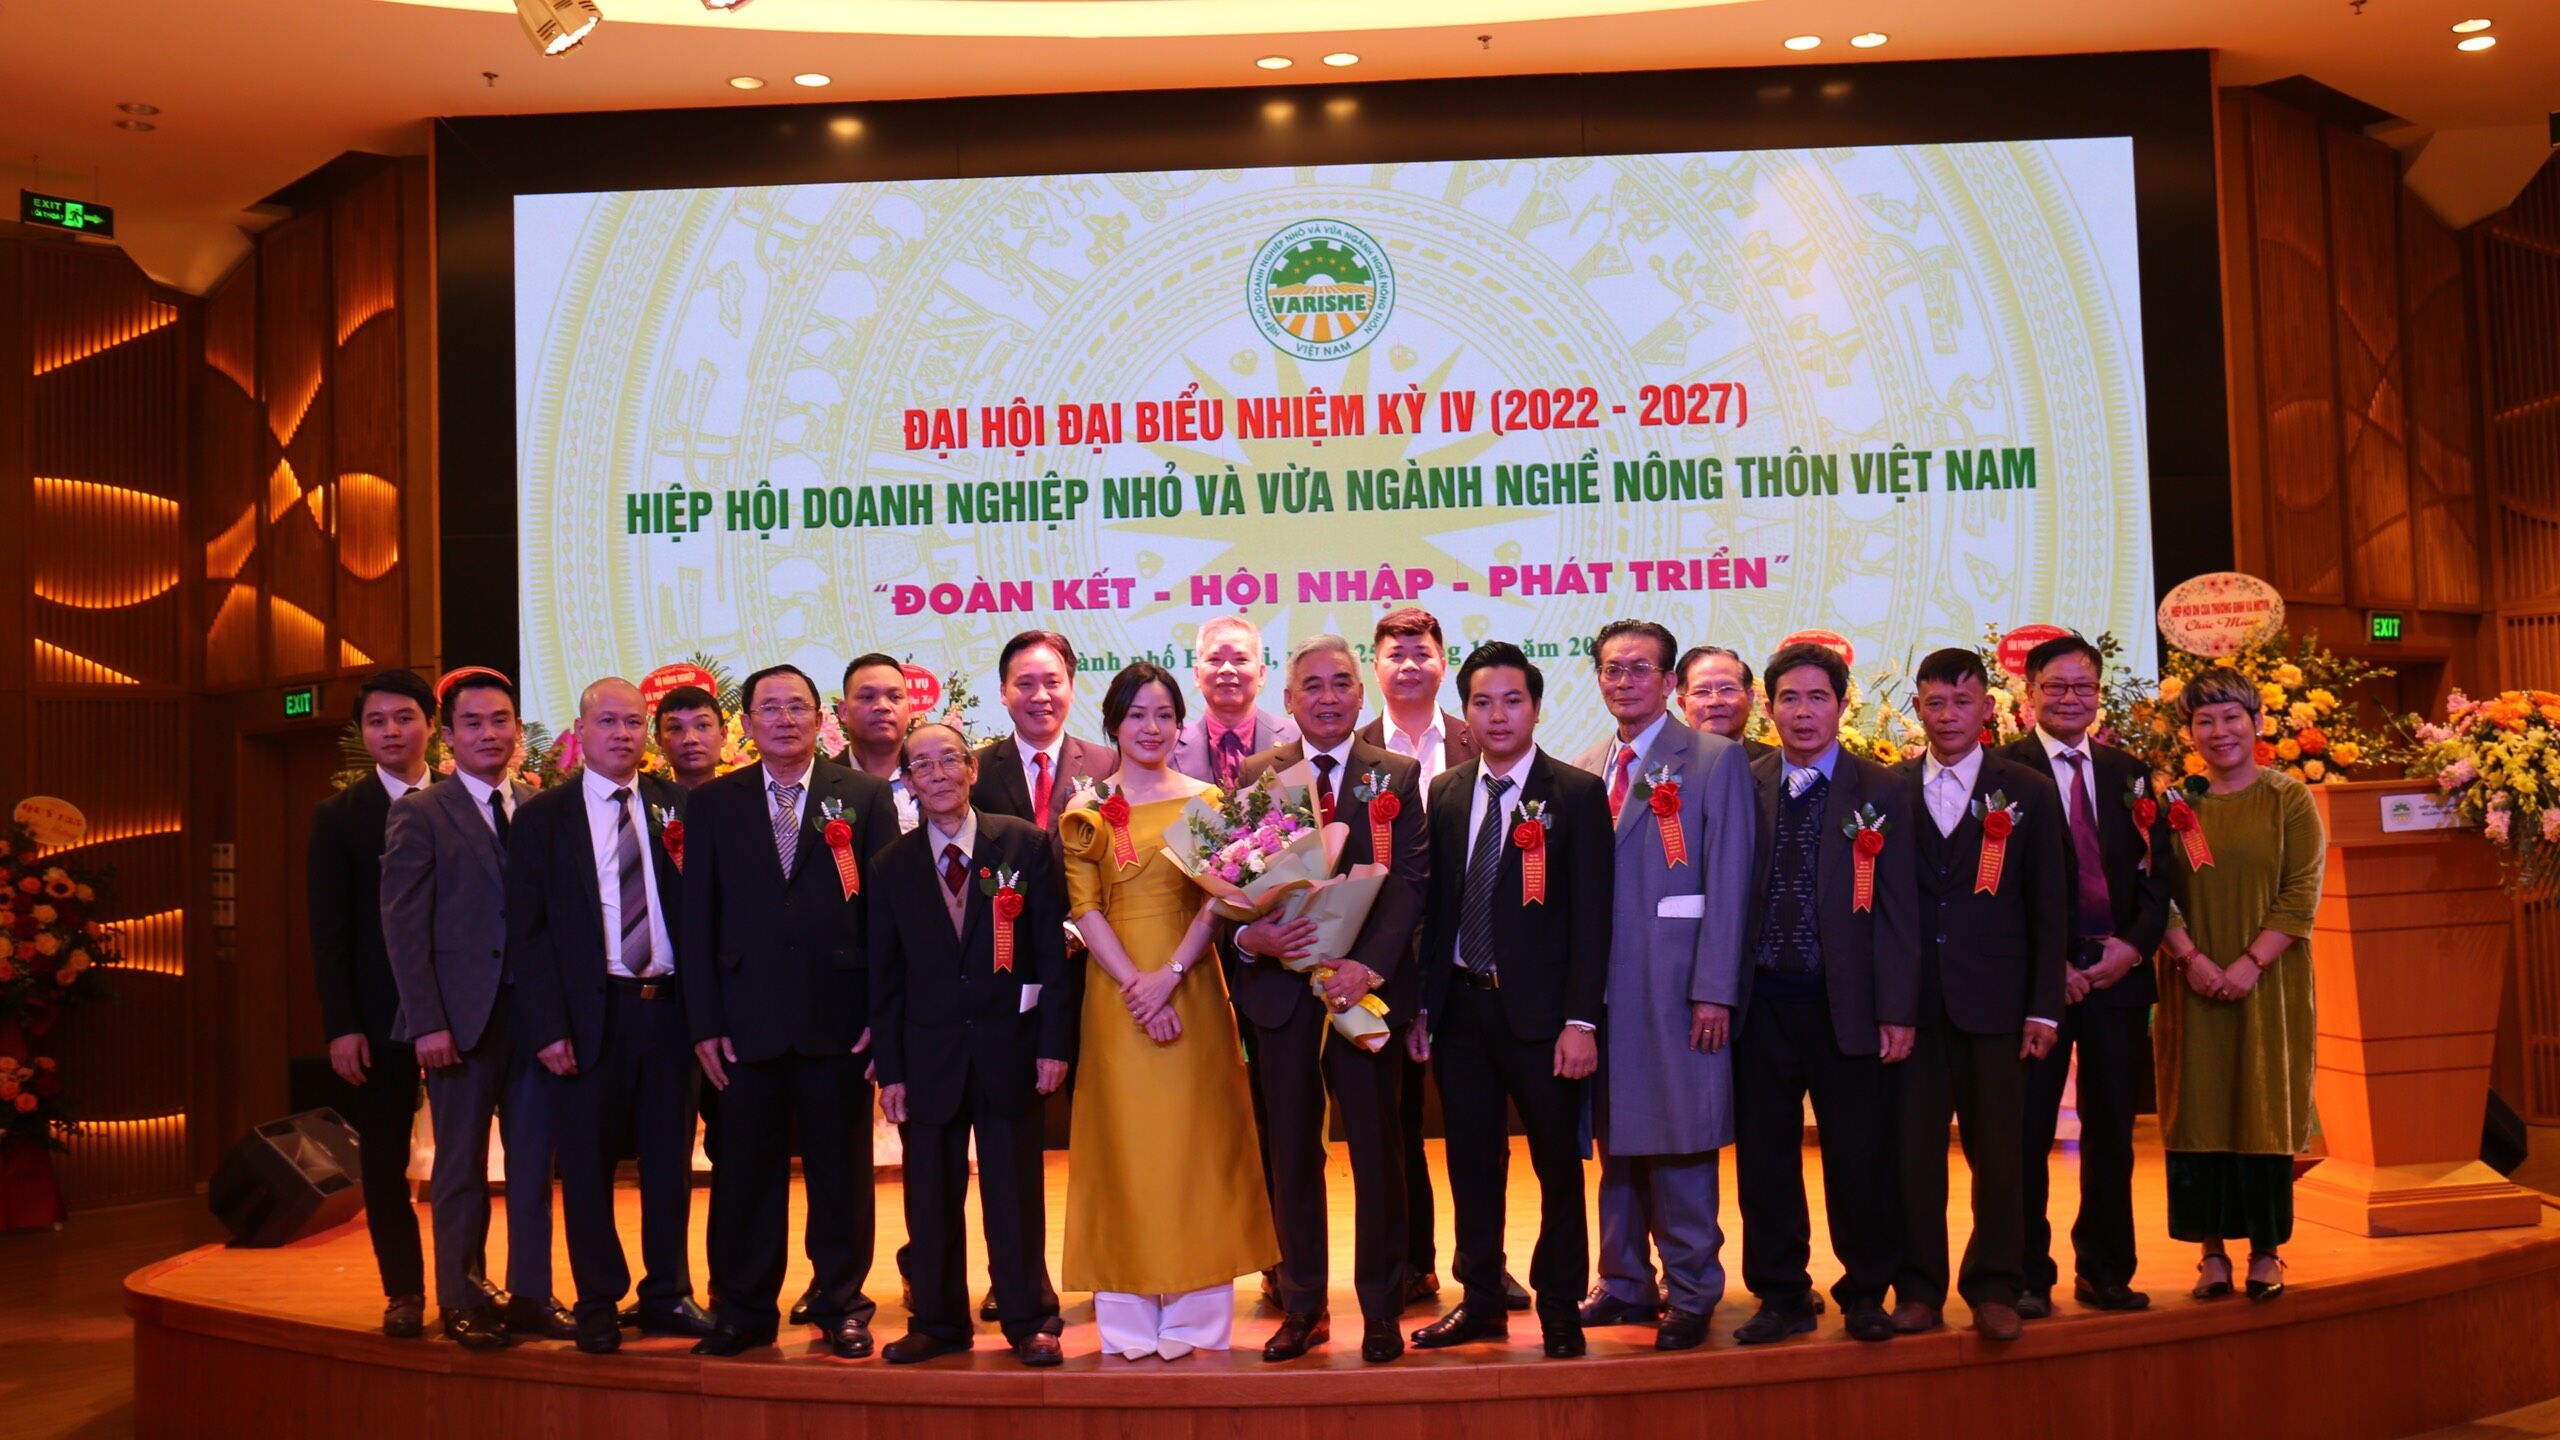 Ra mắt Ban Chấp hành mới của Hiệp hội Doanh nghiệp nhỏ và vừa ngành nghề nông thôn Việt Nam nhiệm kỳ IV.